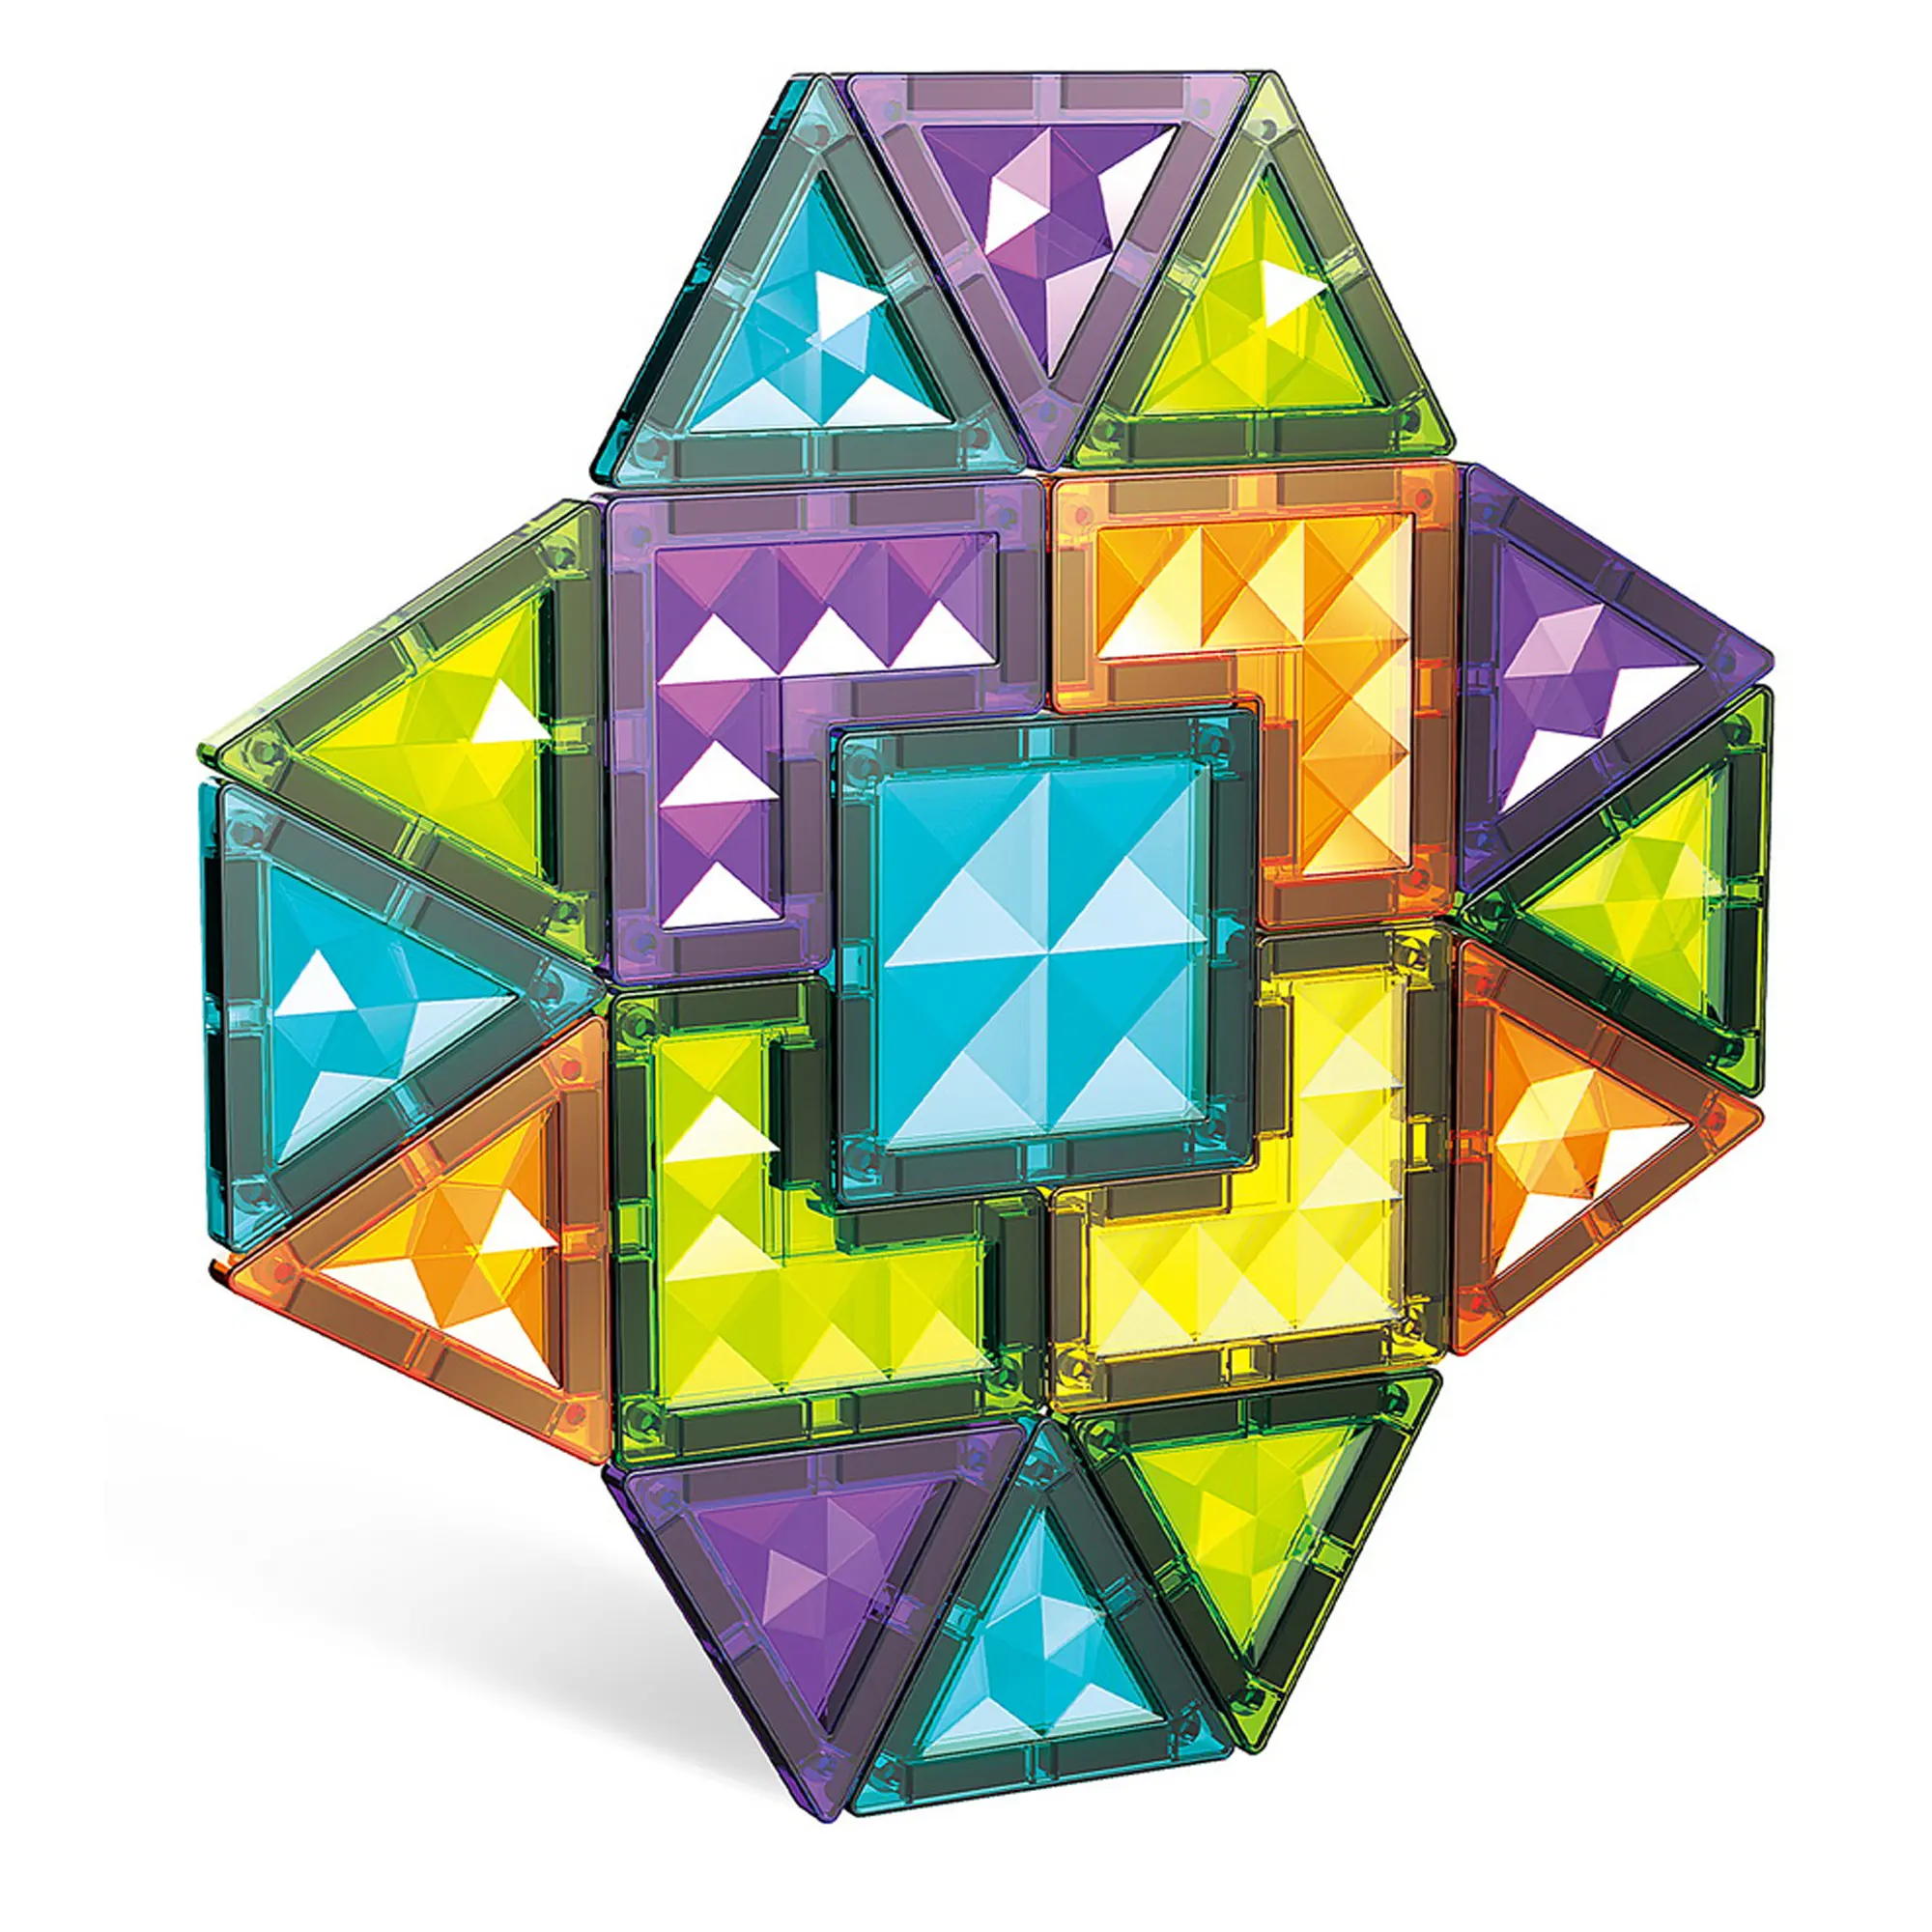 Quebra-cabeça chinês com peças coloridas mais vendidas, azulejos de diamantes coloridos mágicos magnéticos e blocos de construção